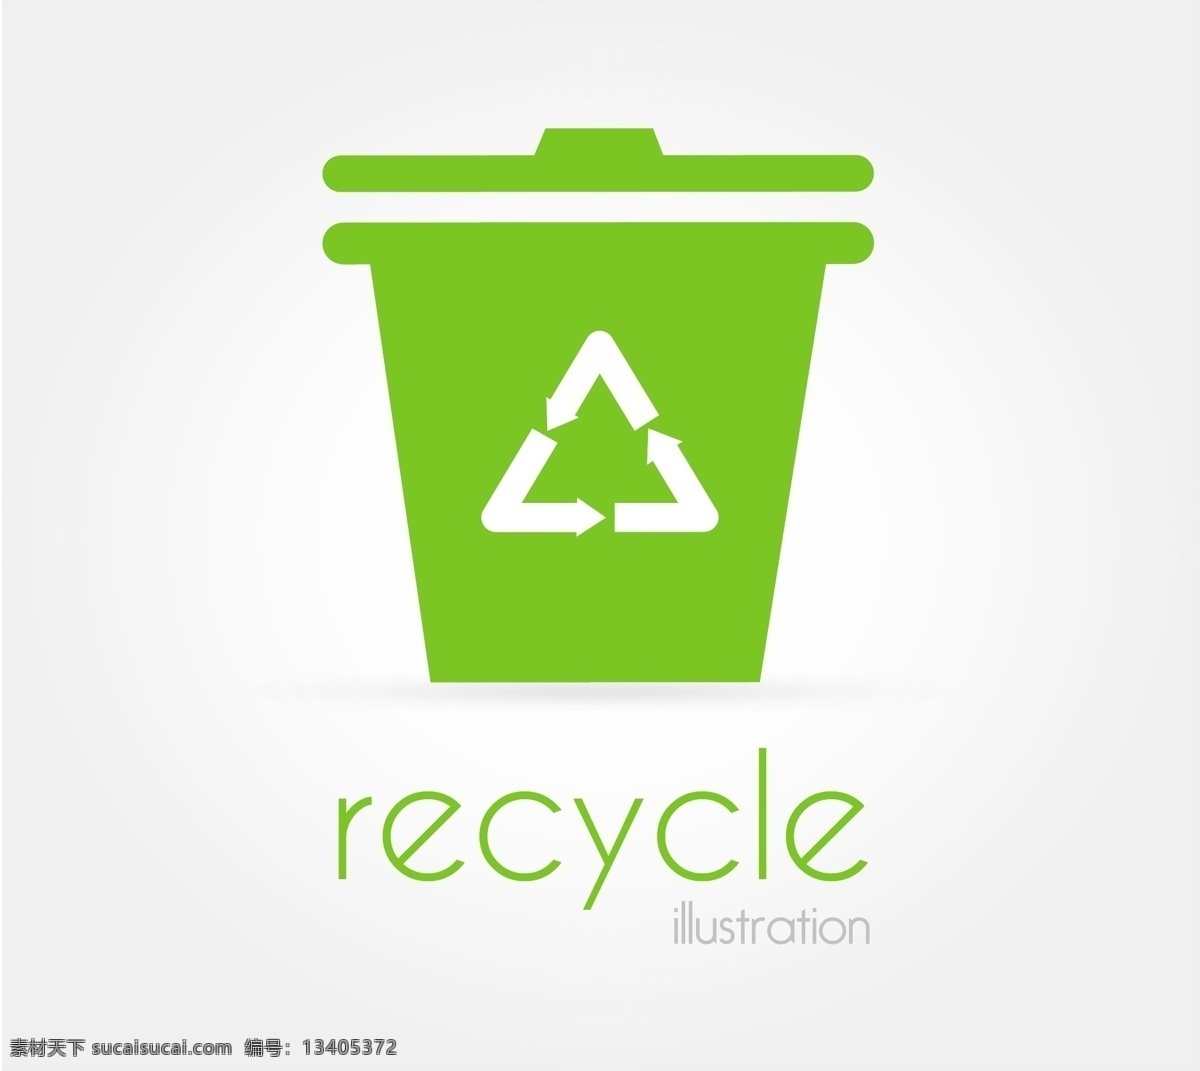 绿色 垃圾桶 图标 绿色垃圾桶 可回收图标 彩色垃圾桶 垃圾桶图标 卡通垃圾桶 矢量垃圾桶 环保主题 生活百科 矢量素材 白色